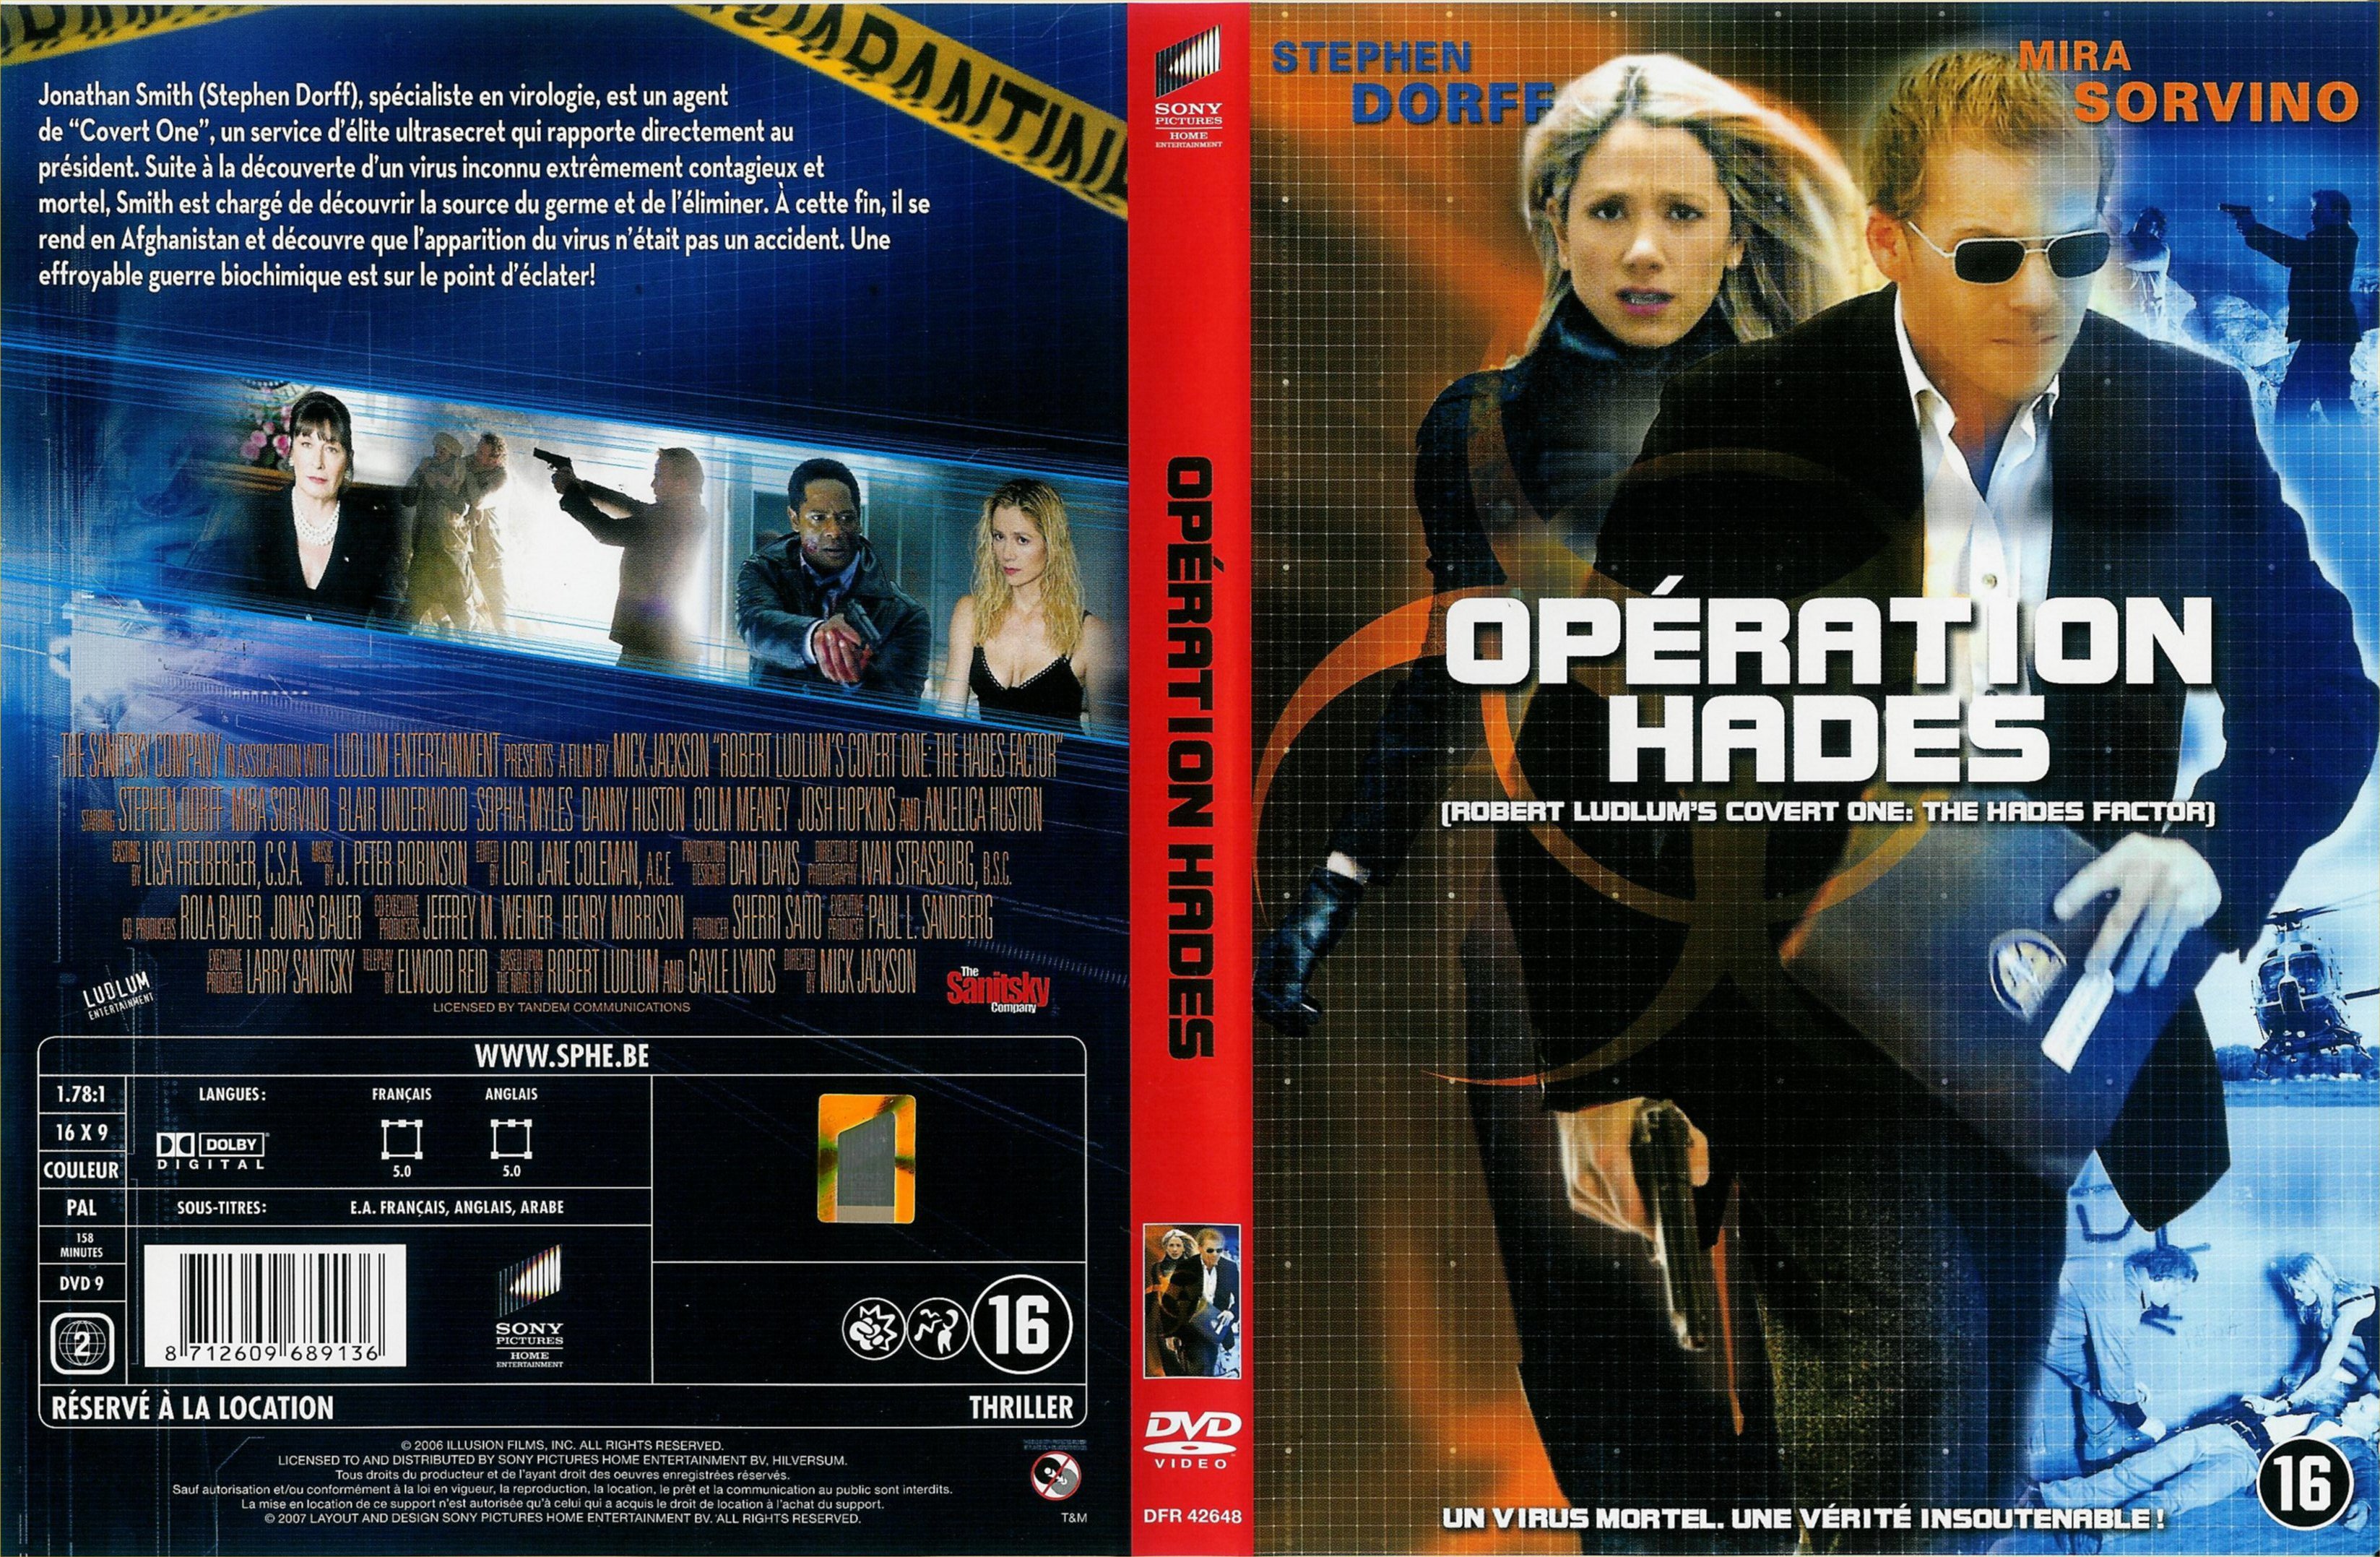 Jaquette DVD Opration Hades v2